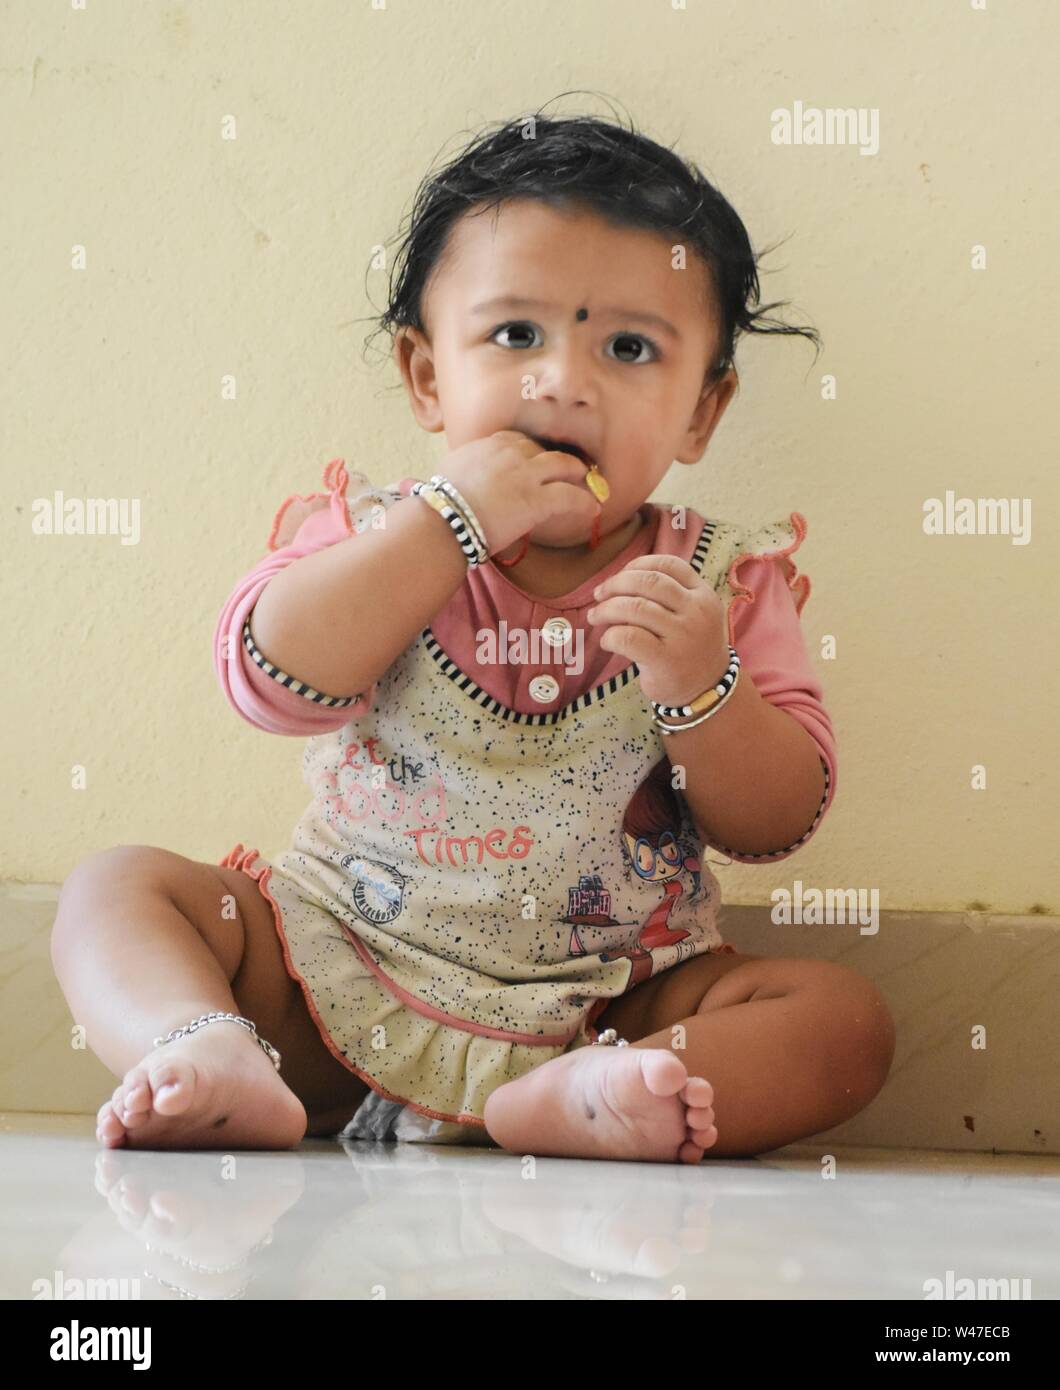 A cute little baby girl in joy mood Stock Photo